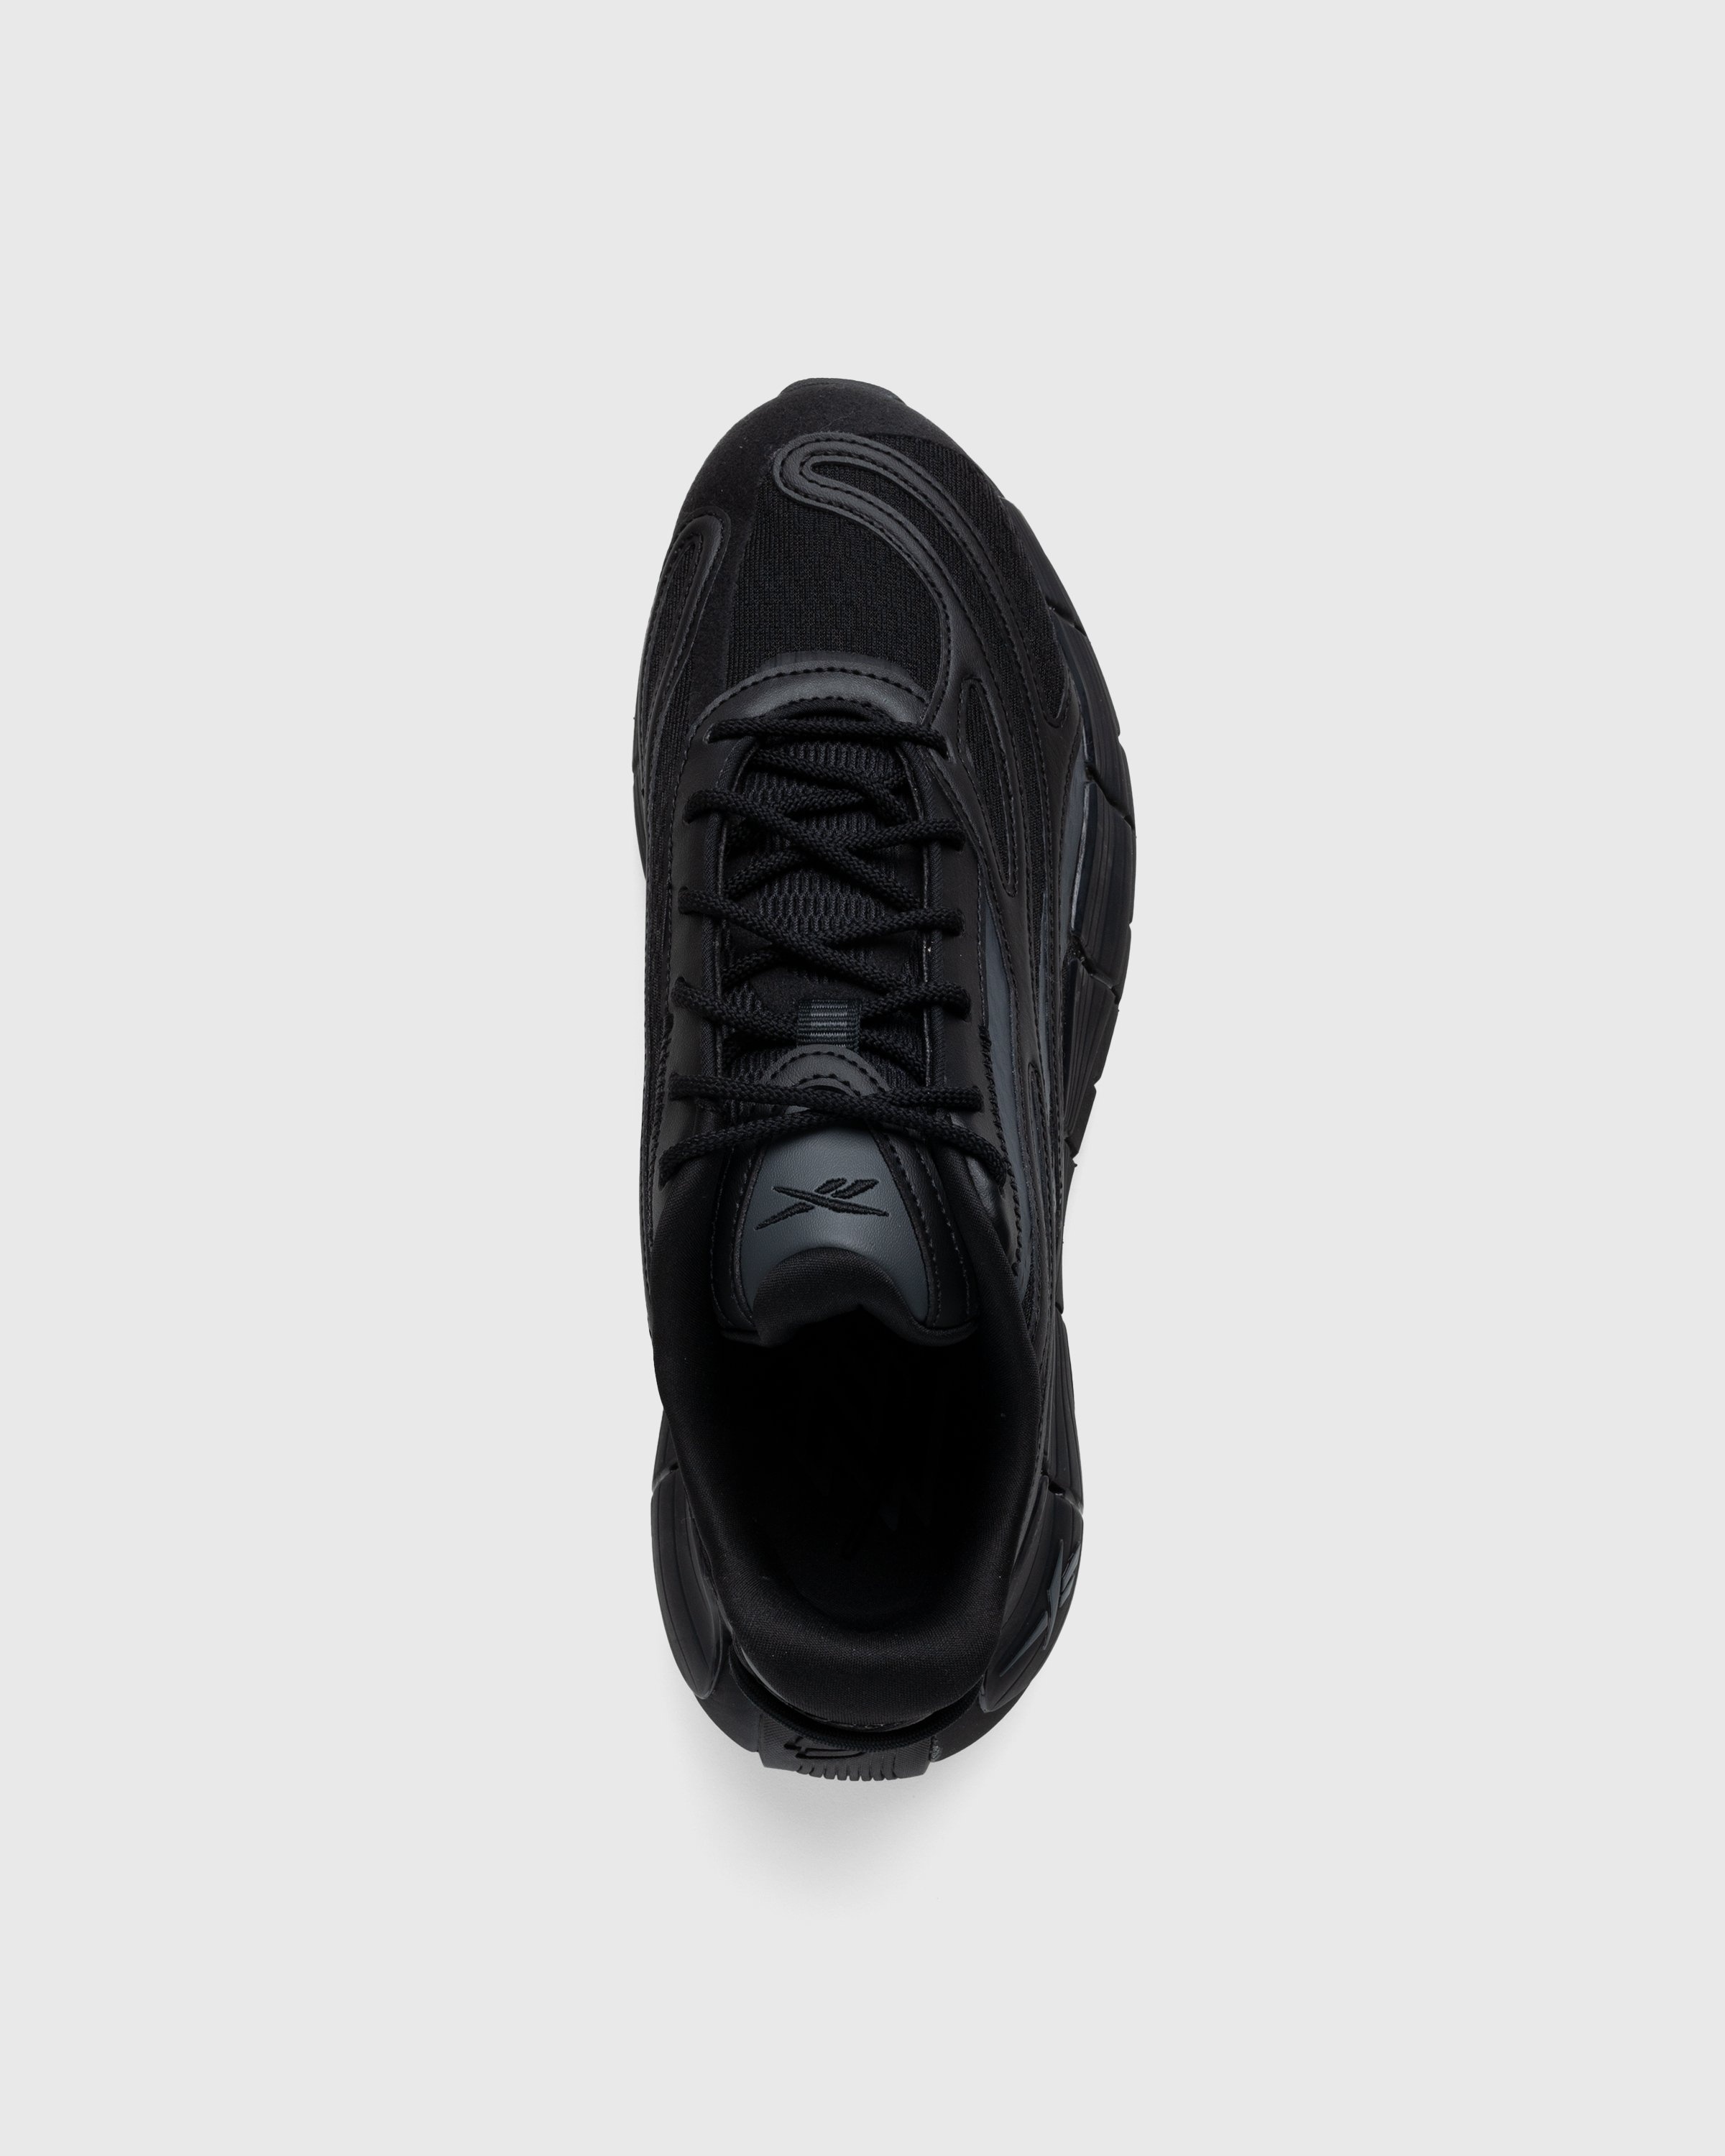 Reebok – Zig Kinetica 2.5 Black - Sneakers - Black - Image 4